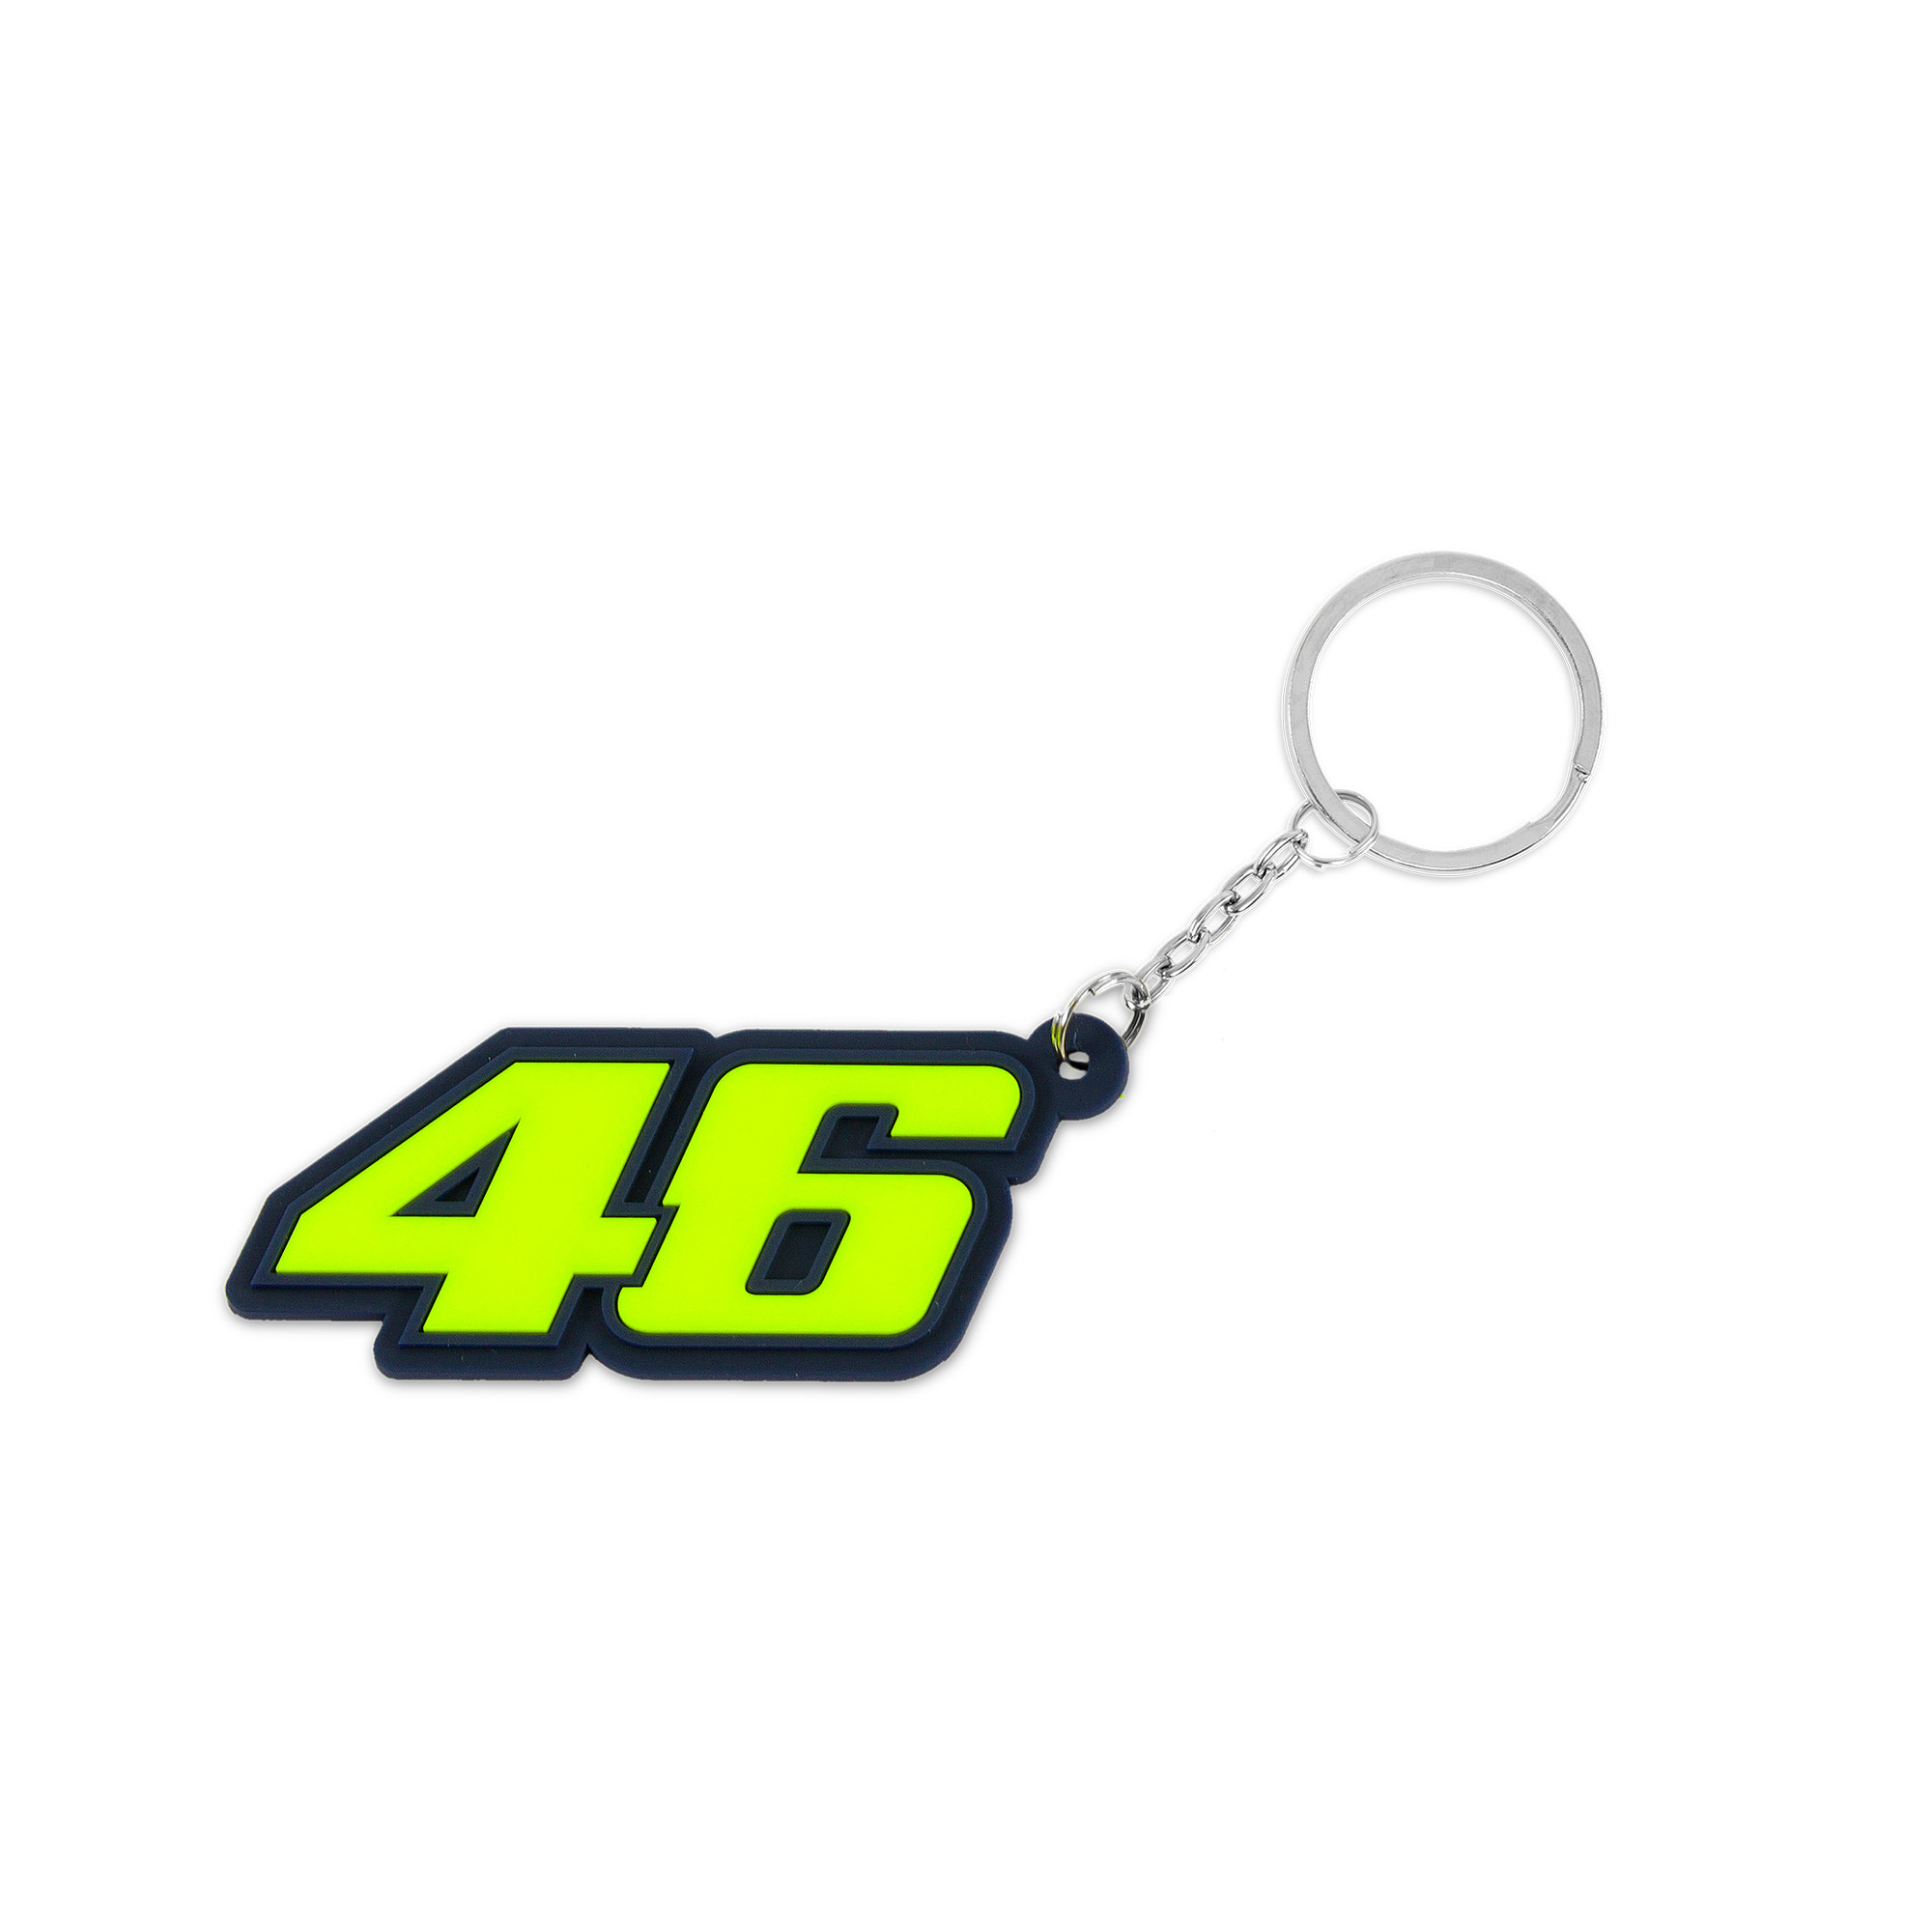 Valentino Rossi Schlüsselanhänger "46" - gelb